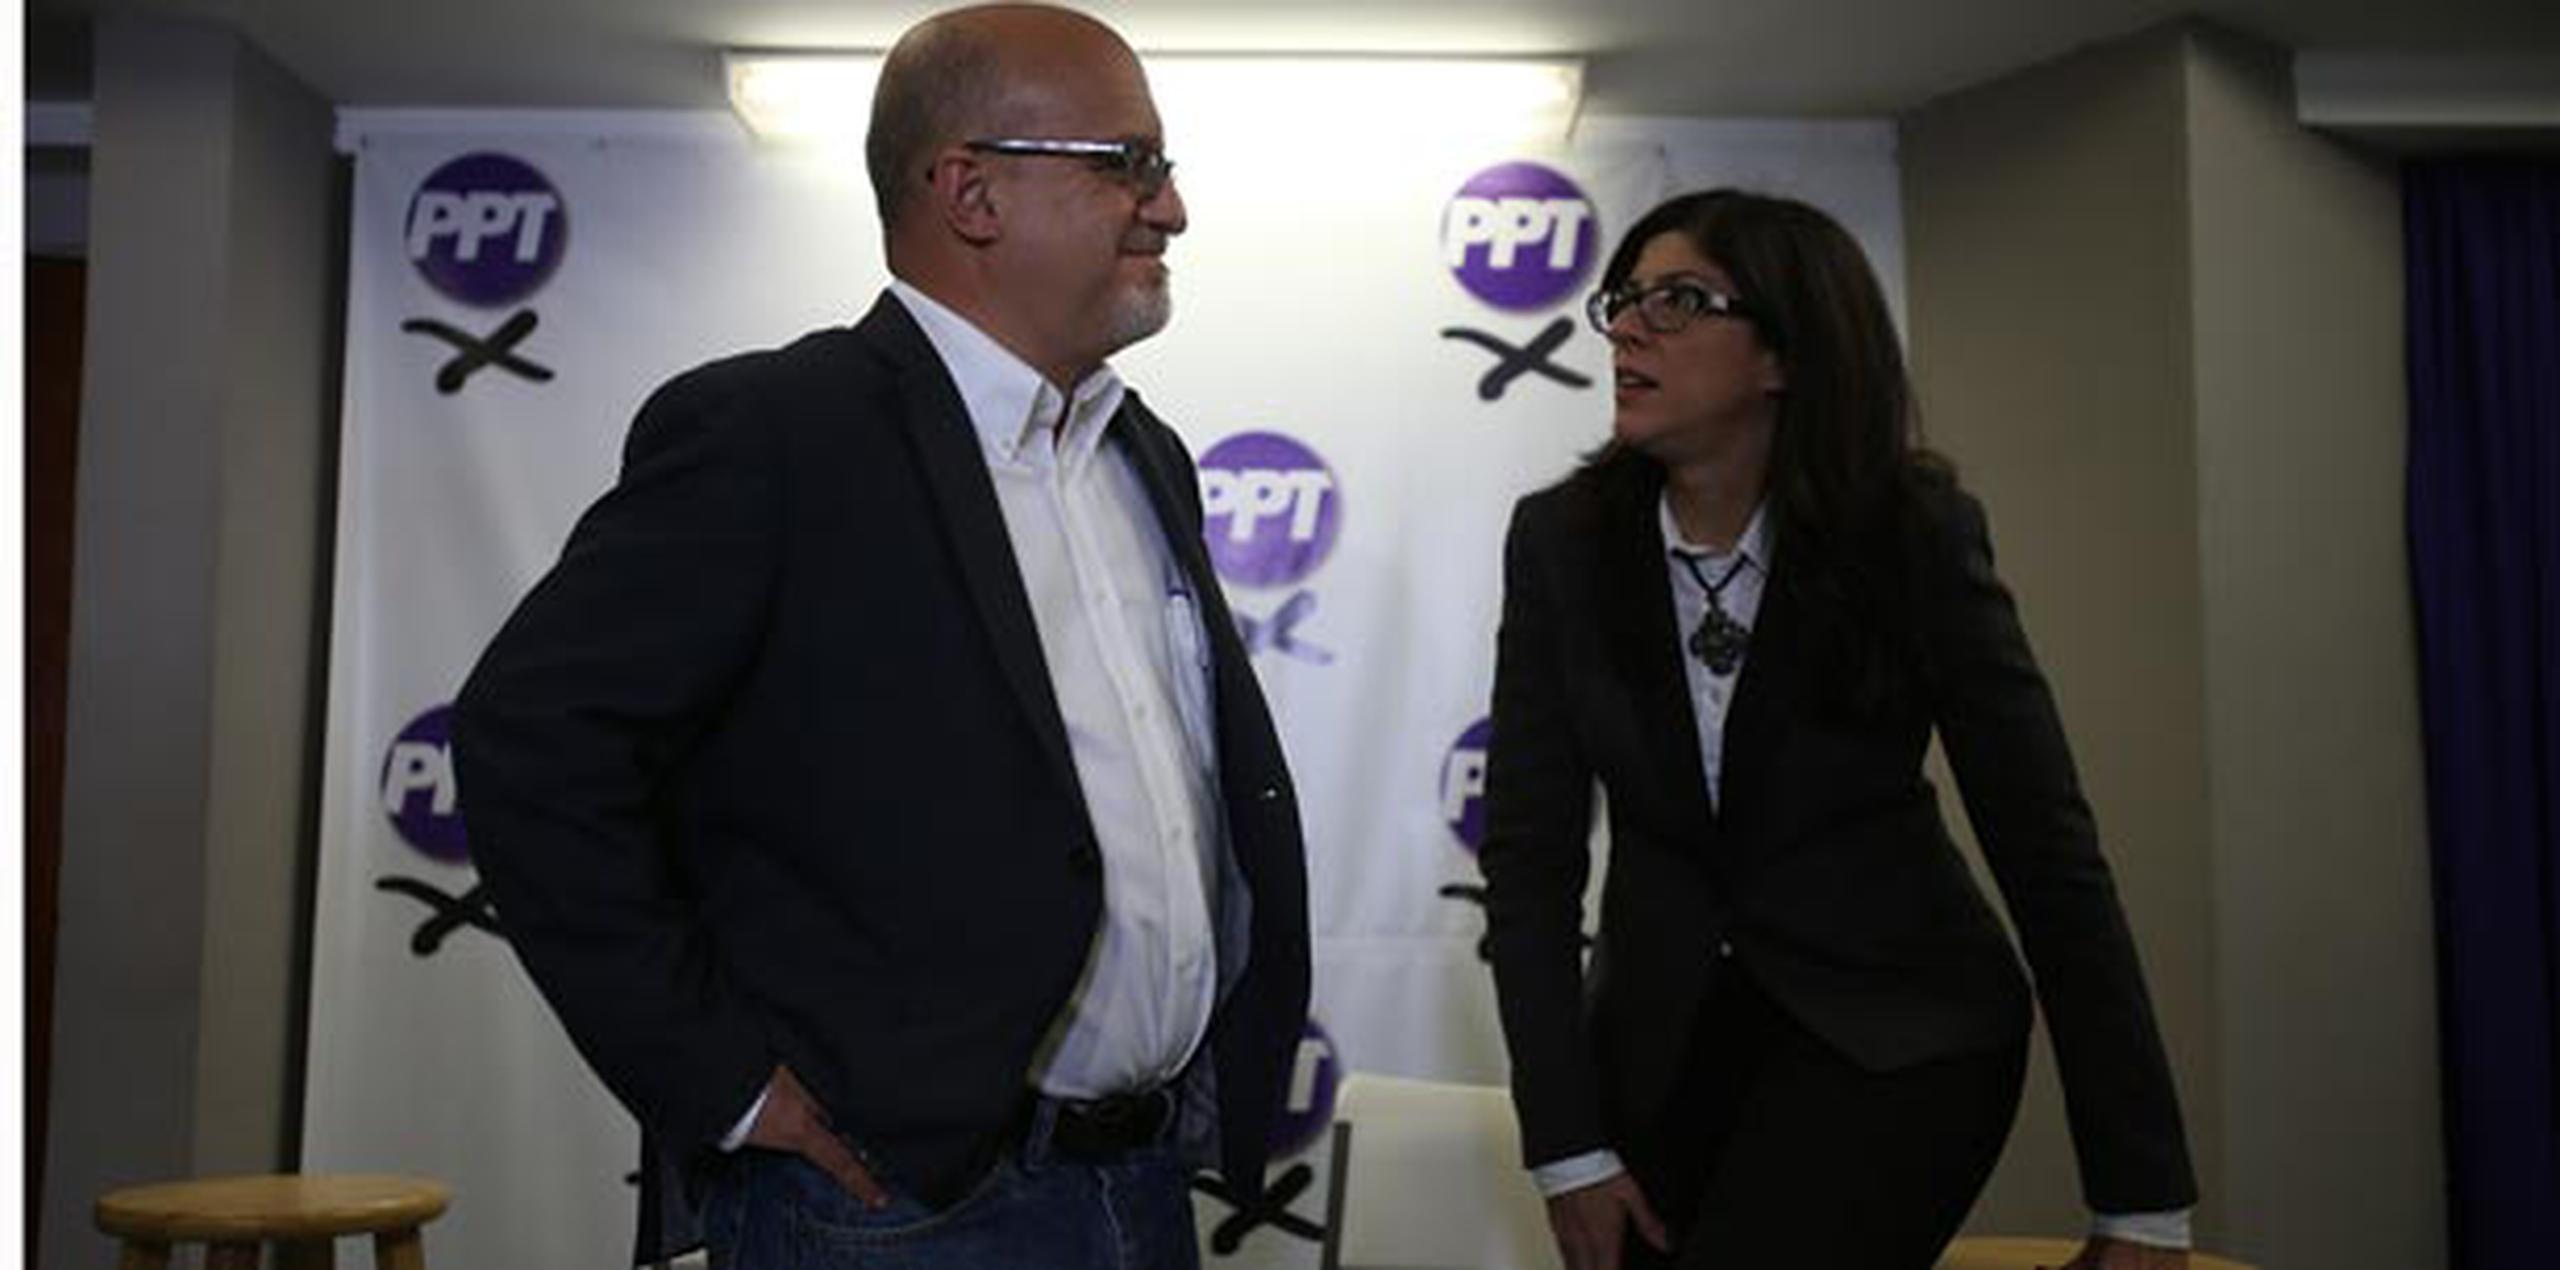 Rafael Bernabe conversa con la candidata del PPT a la comisaría residente Mariana Nogales. (jose.candelaria@gfrmedia.com)